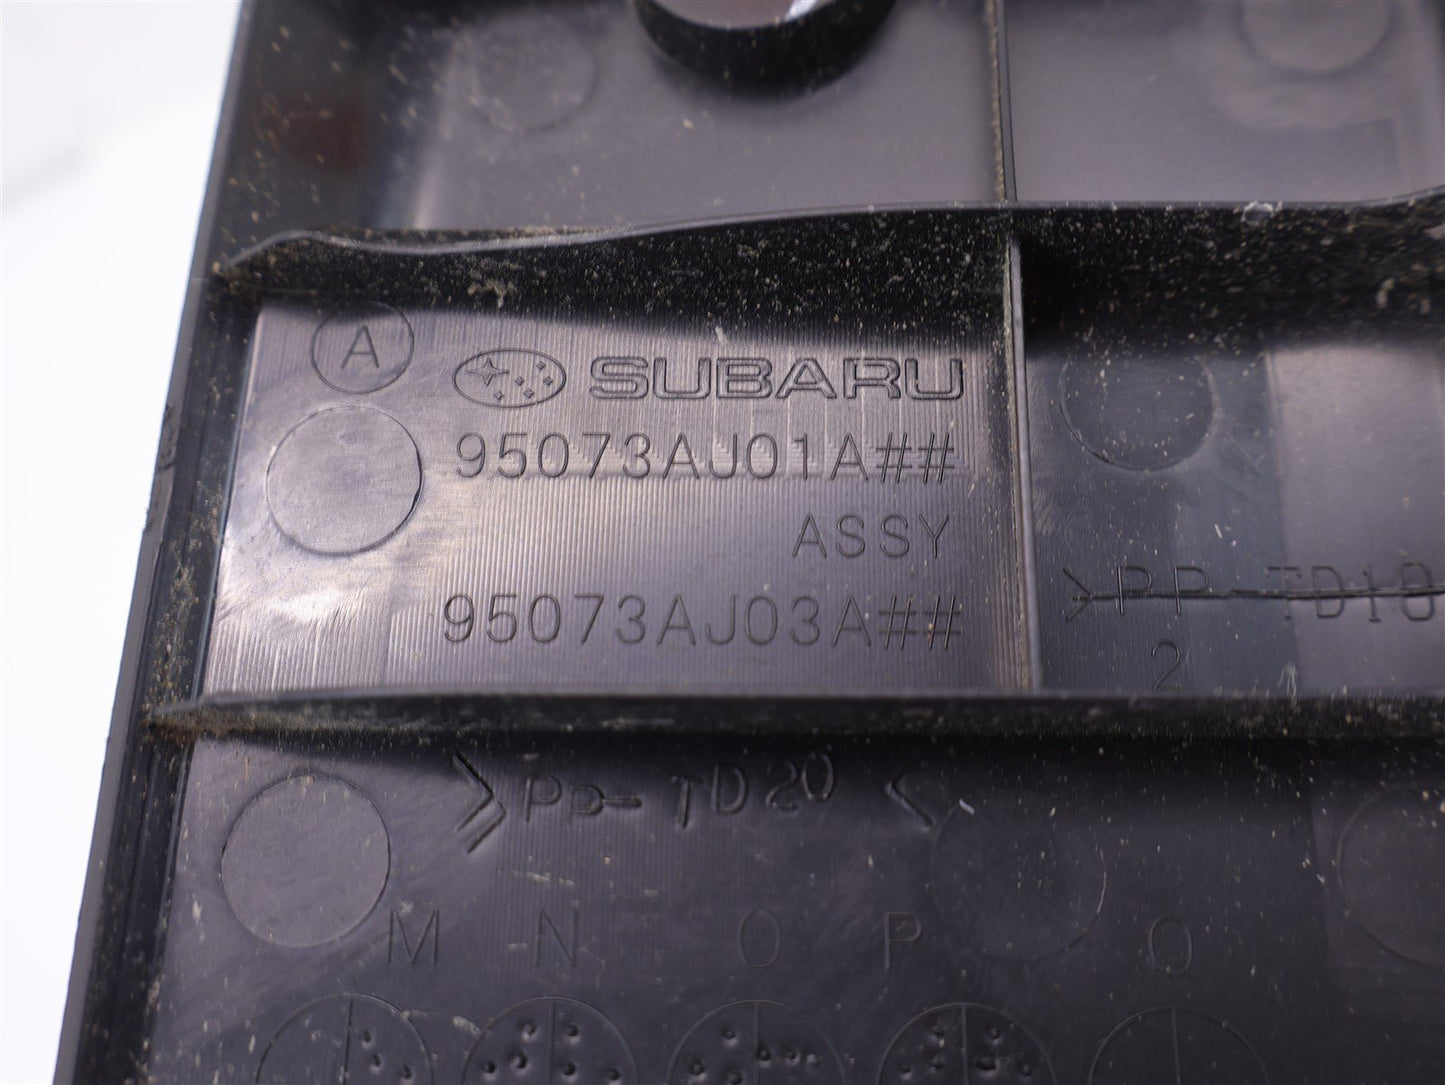 2010-2014 Subaru Outback Rear Hatch Sill 95073AJ01A Scuff Plate Trim Trunk Gate